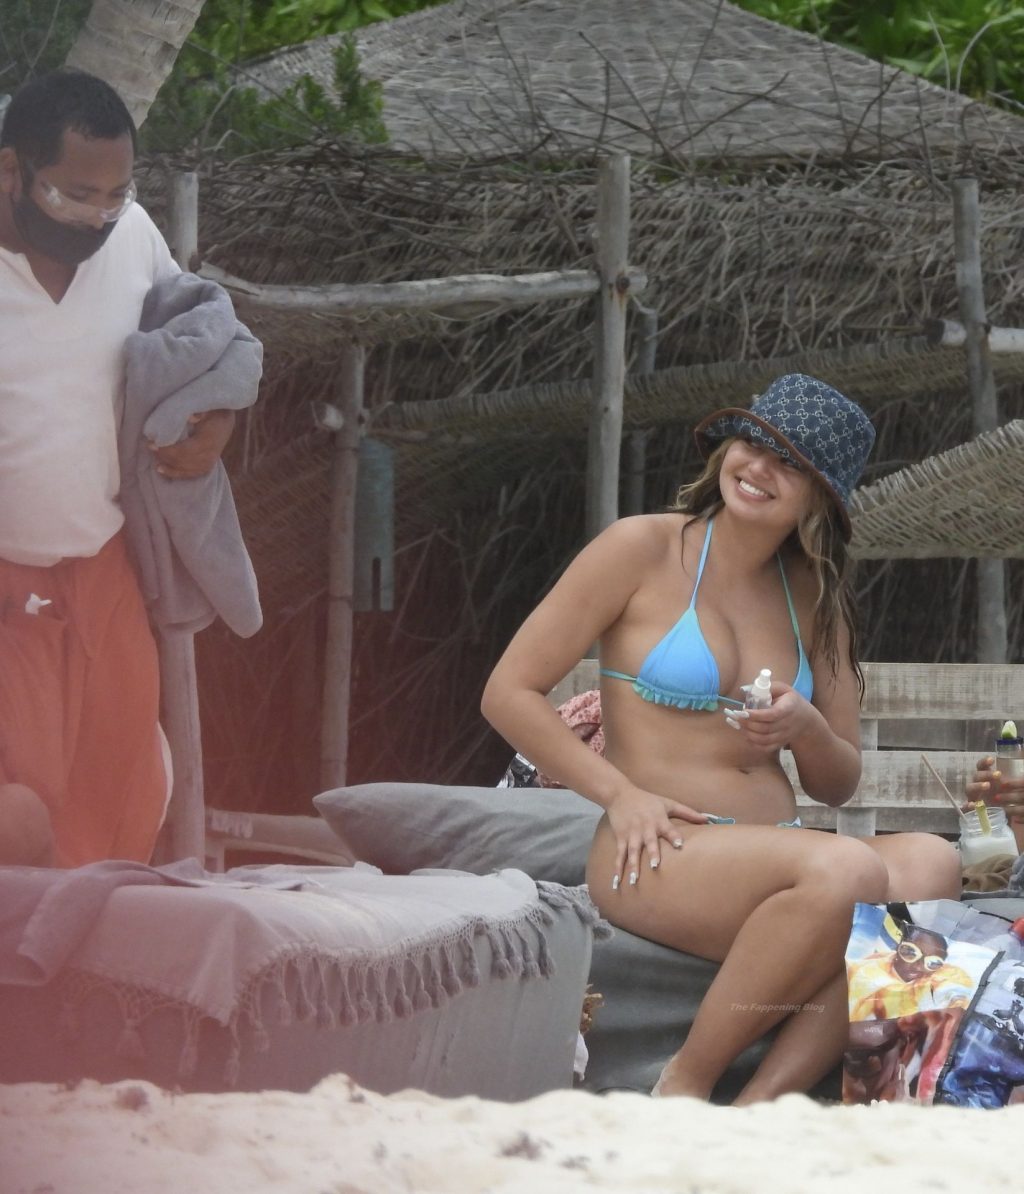 Sofia Jamora Enjoys Her Vacation in Mexico (76 Photos)